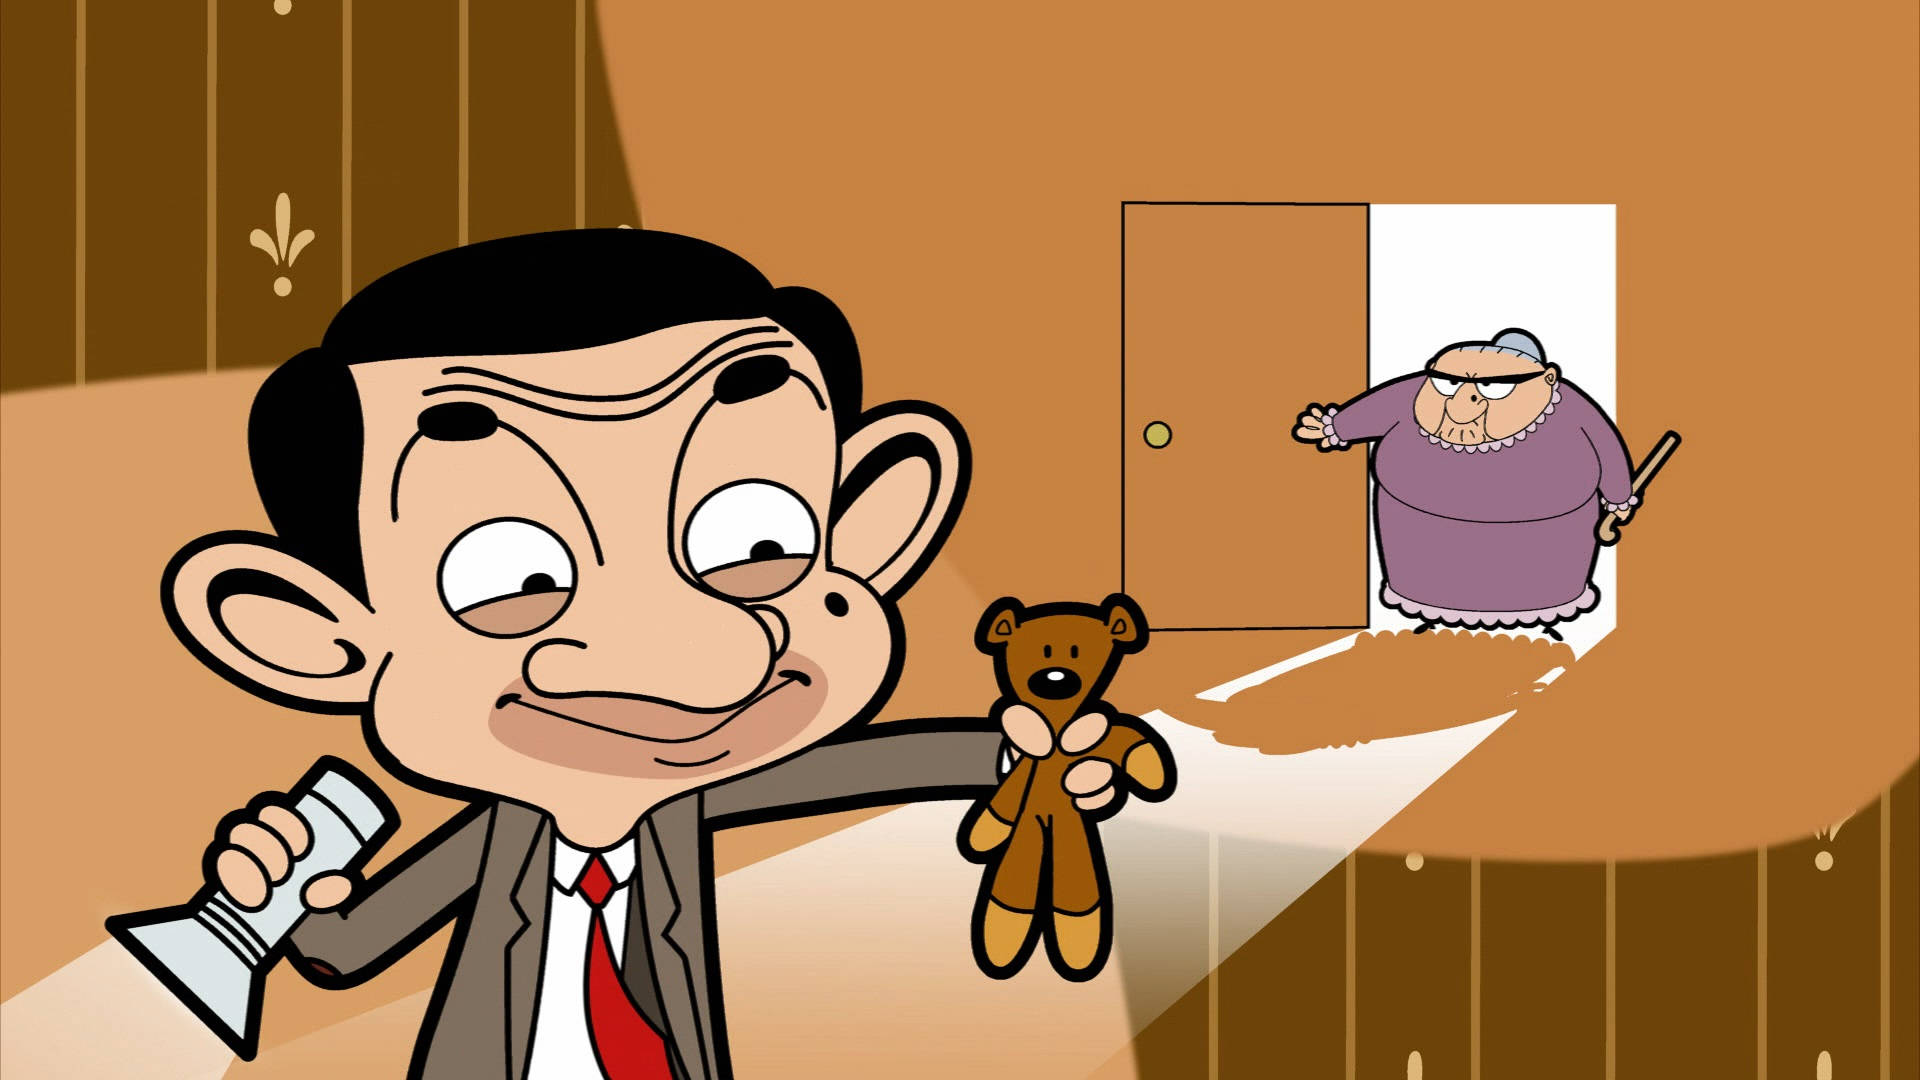 Download Mr. Bean Hip Pose Wallpaper | Wallpapers.com